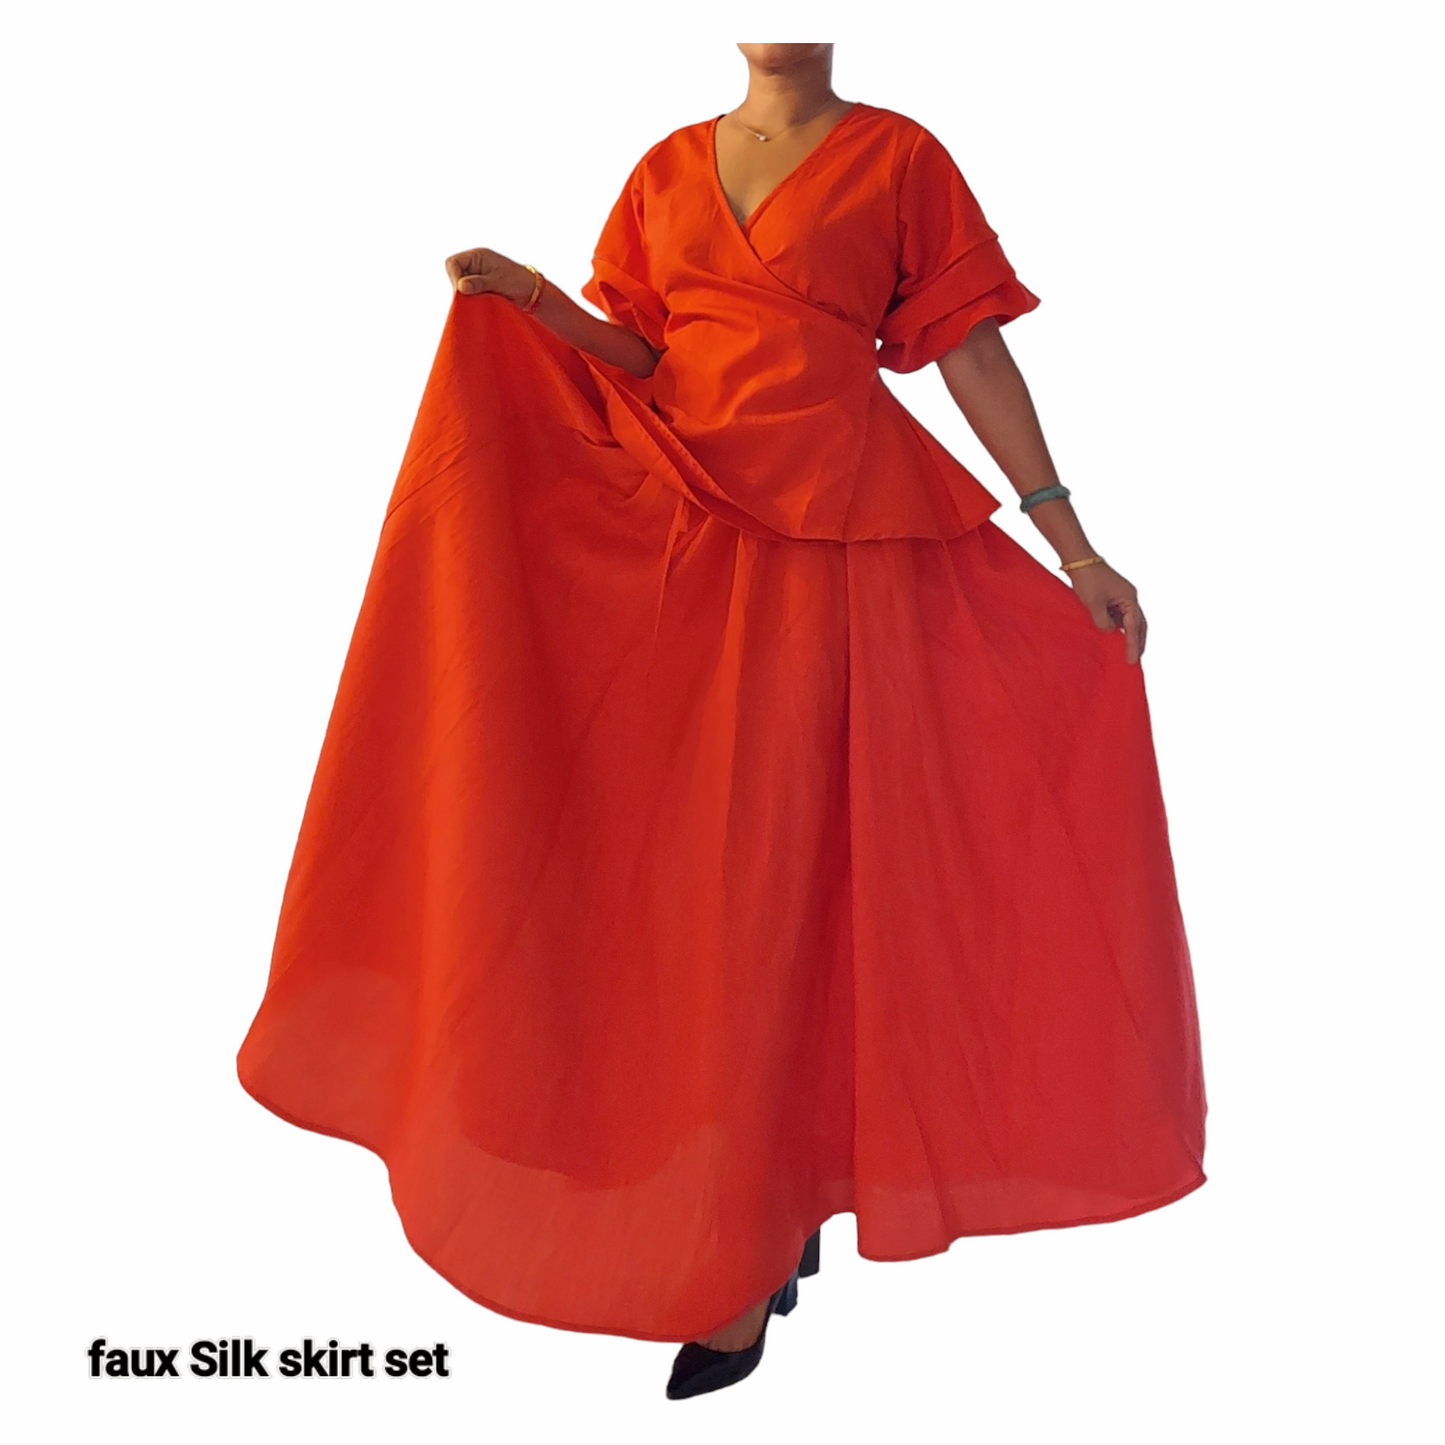 Faux Silk Long Skirt & Wrap Blouse Set - Red